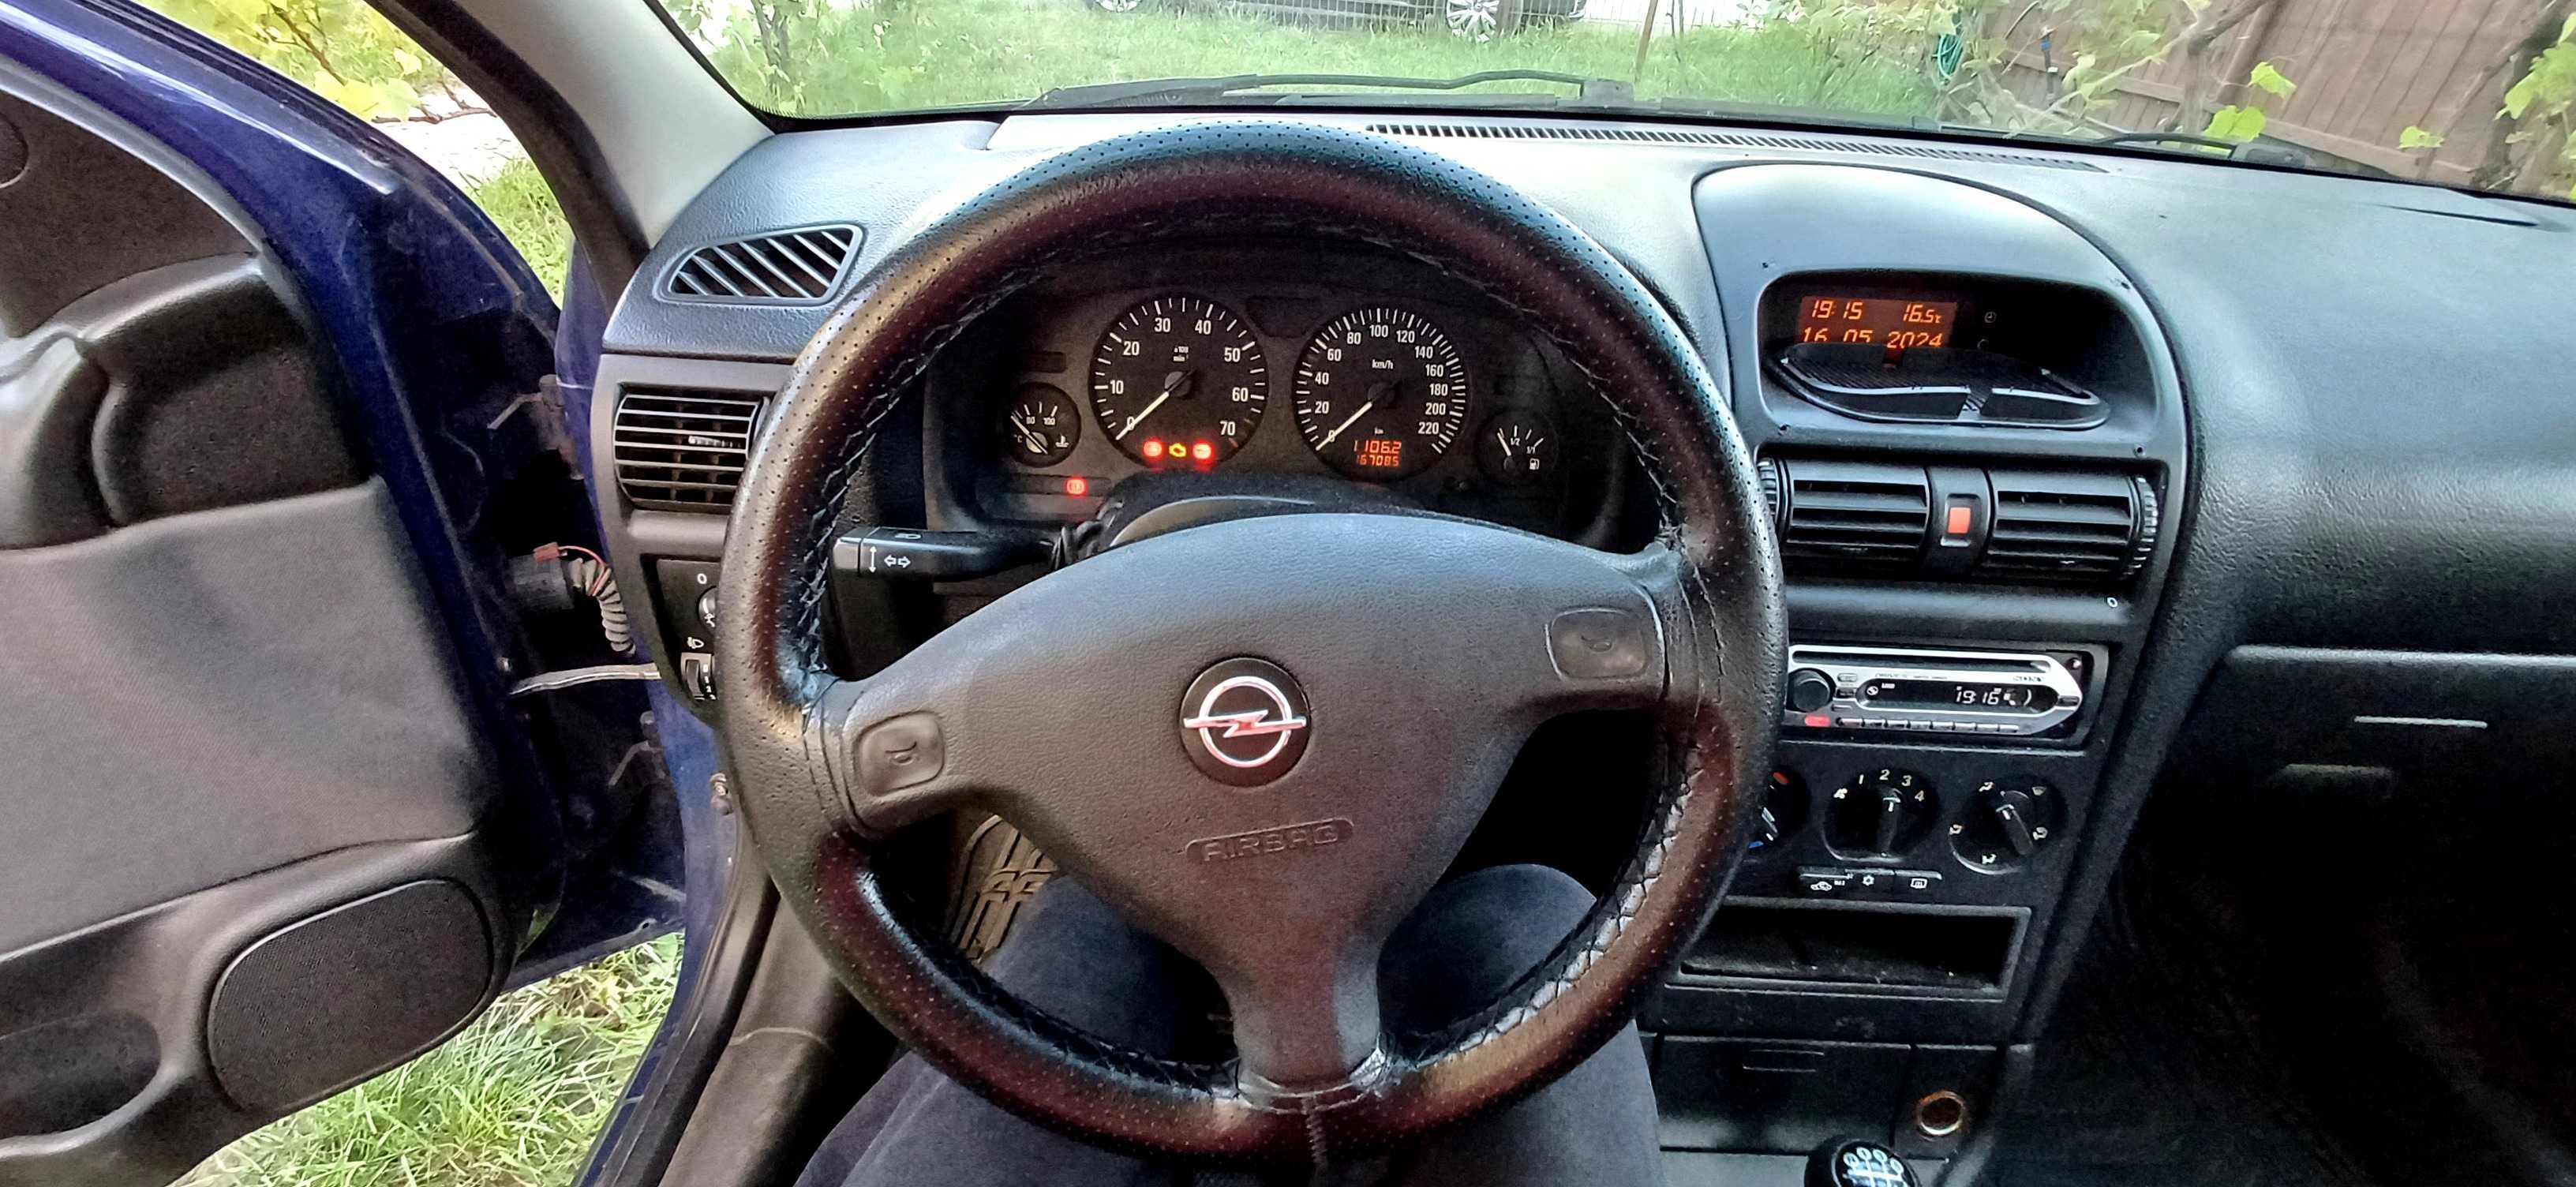 Vînd Opel Astra G